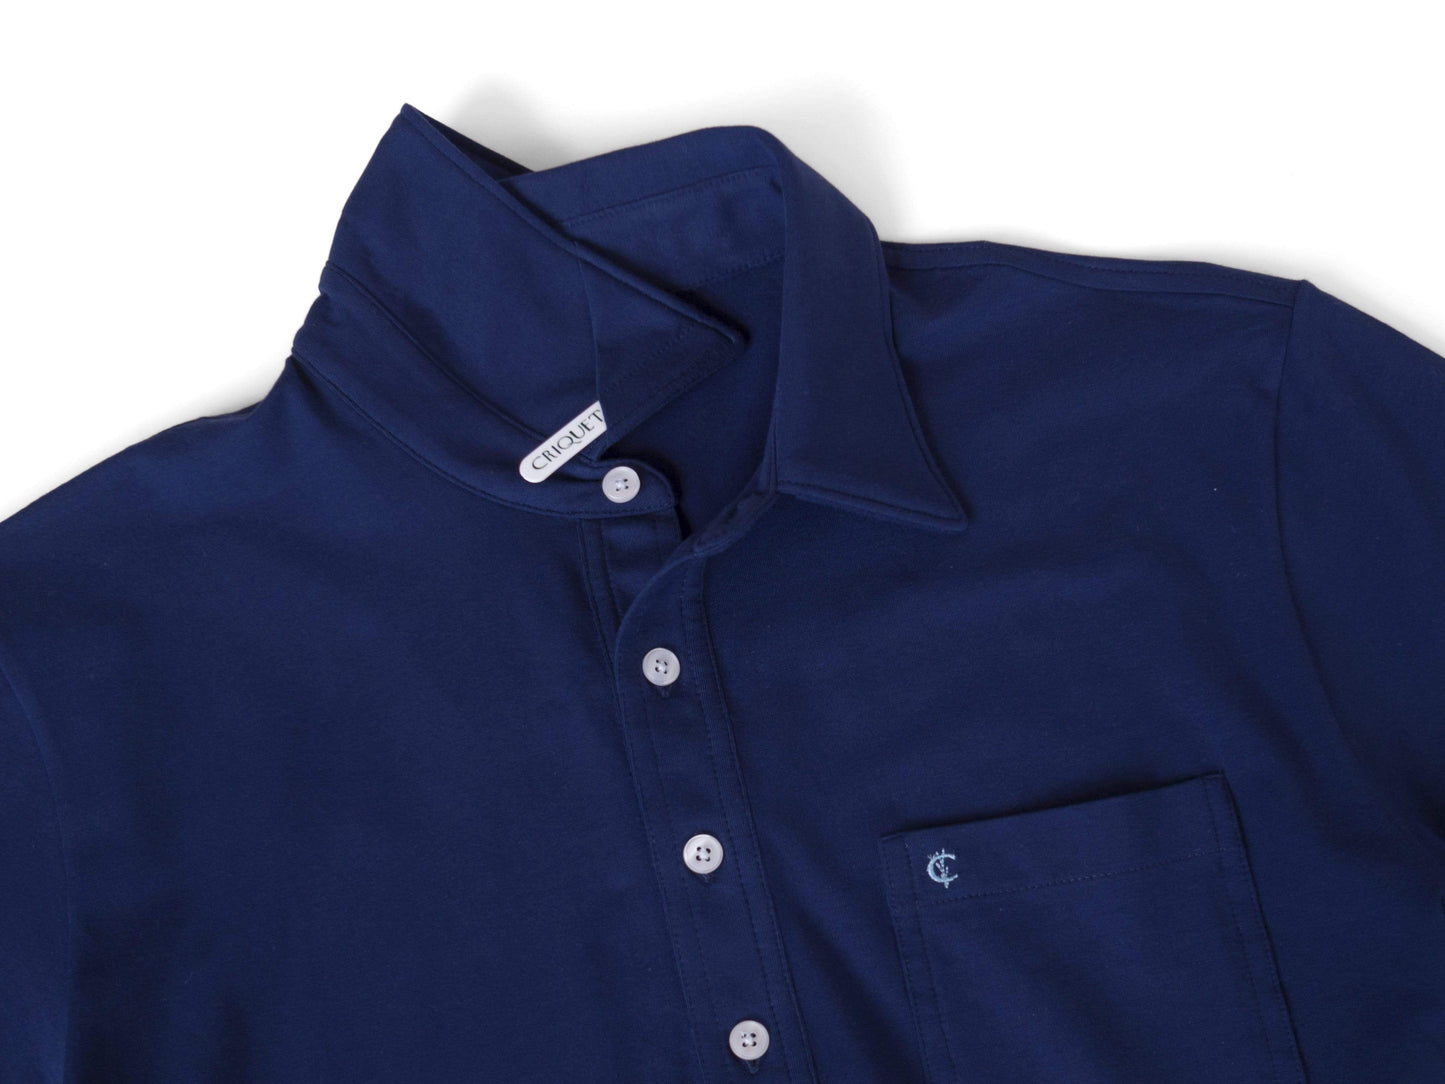 Top-Shelf Players Shirt - Navy Blue